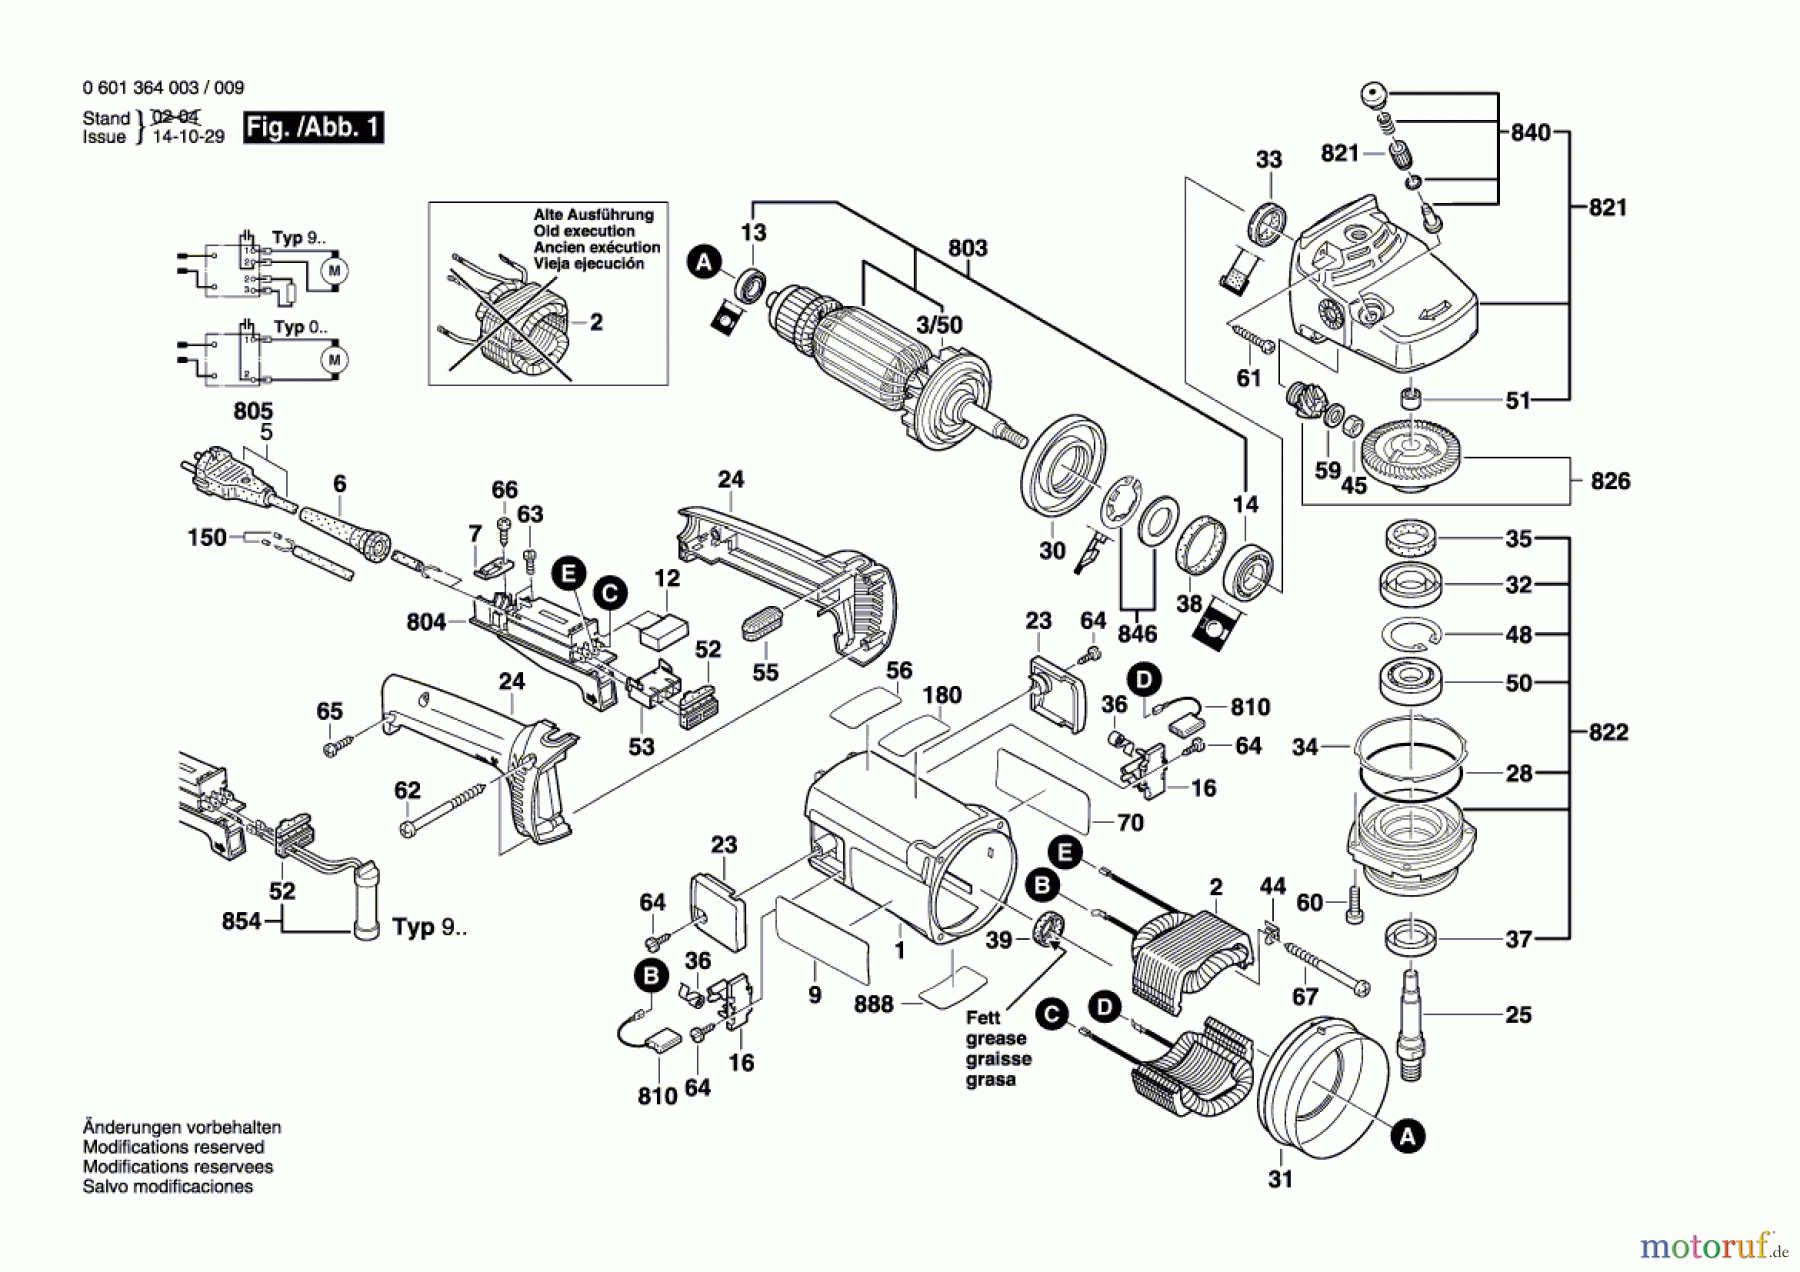  Bosch Werkzeug Winkelschleifer GWS 24-300 I Seite 1